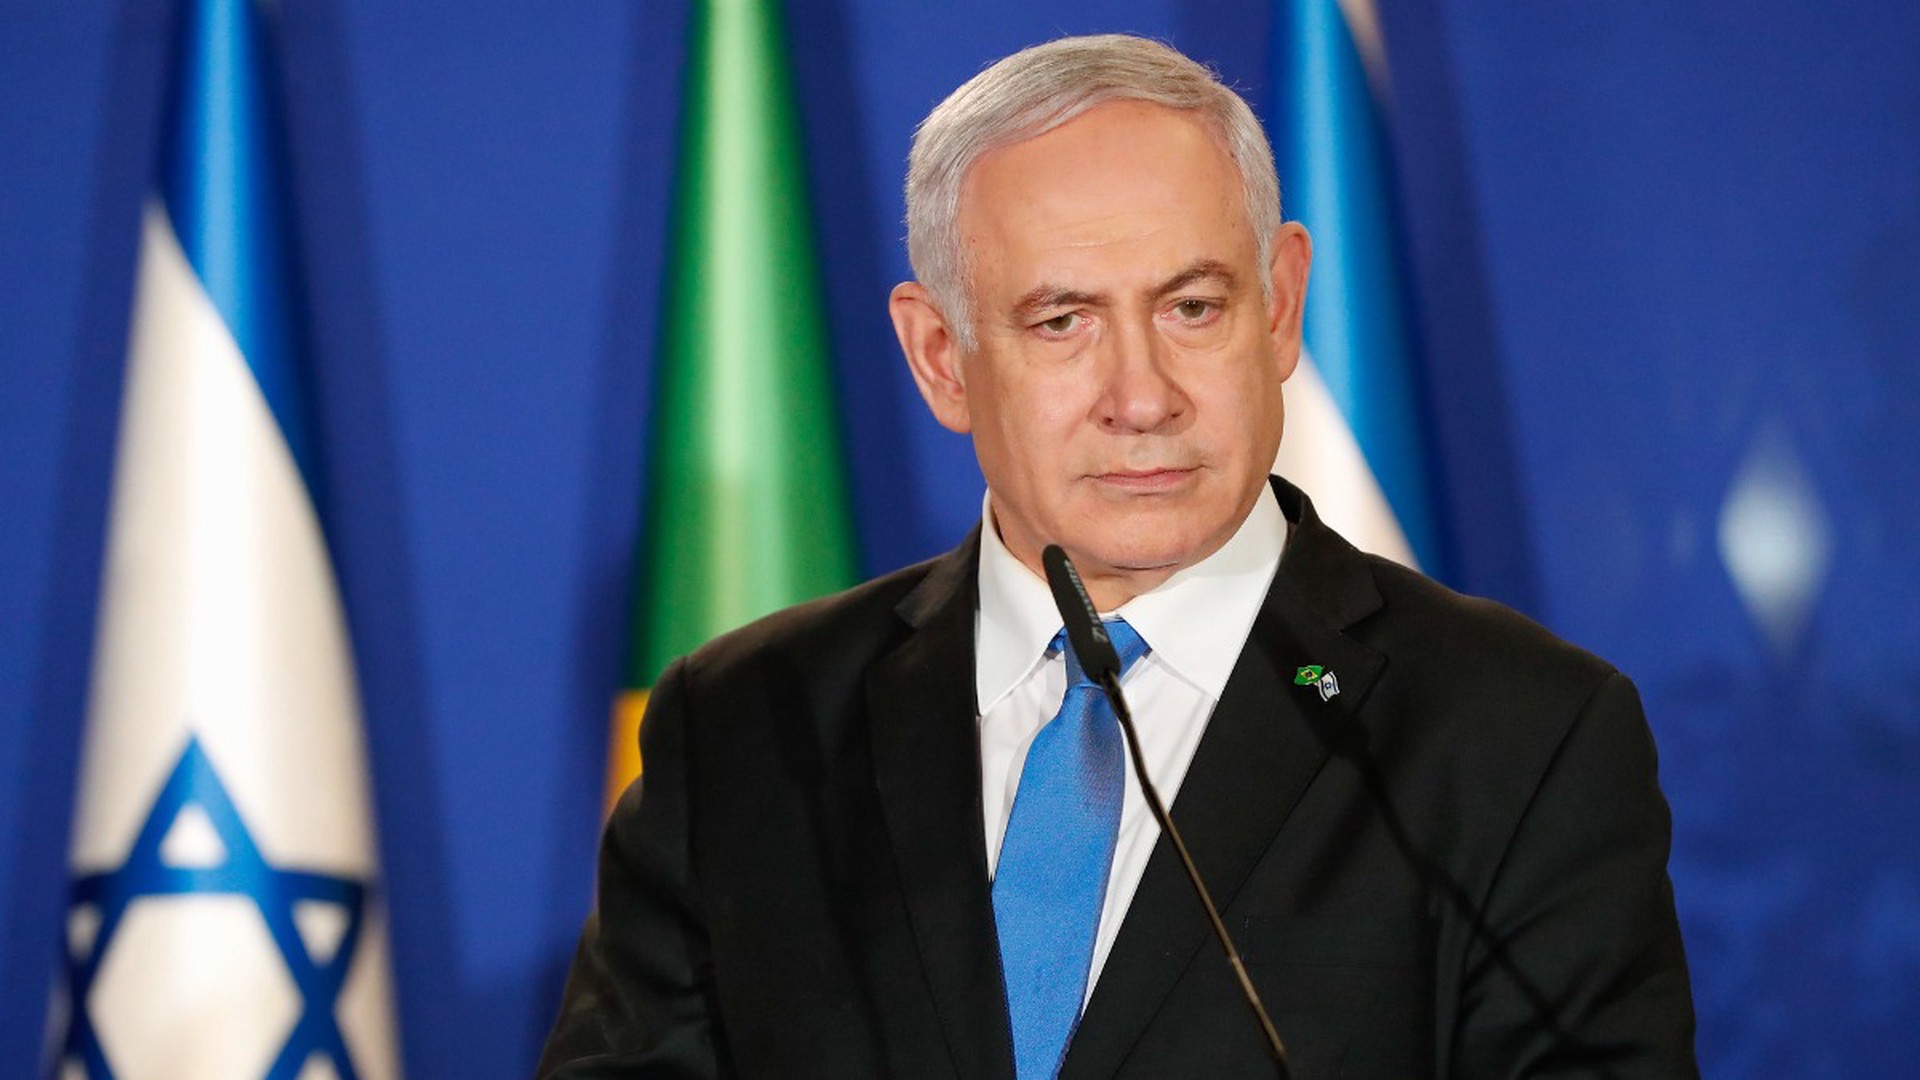 СМИ: Нетаньяху посетил Газу и пообщался с израильскими военными